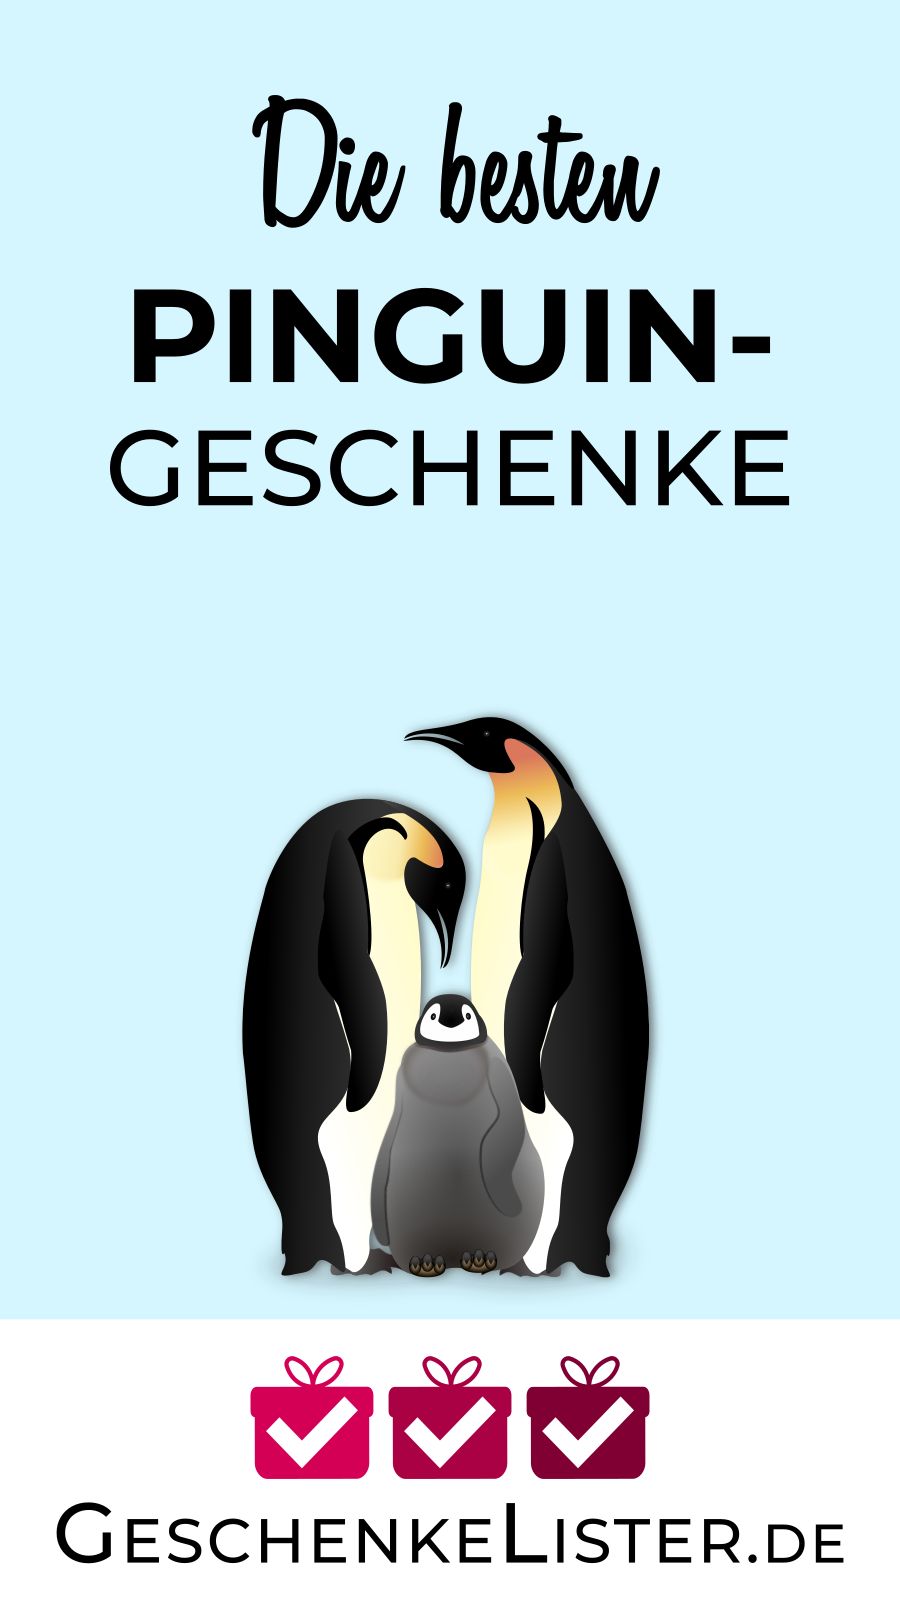 https://geschenkelister.de/wp-content/uploads/2020/05/Pinguin-Geschenke_Pin.jpg